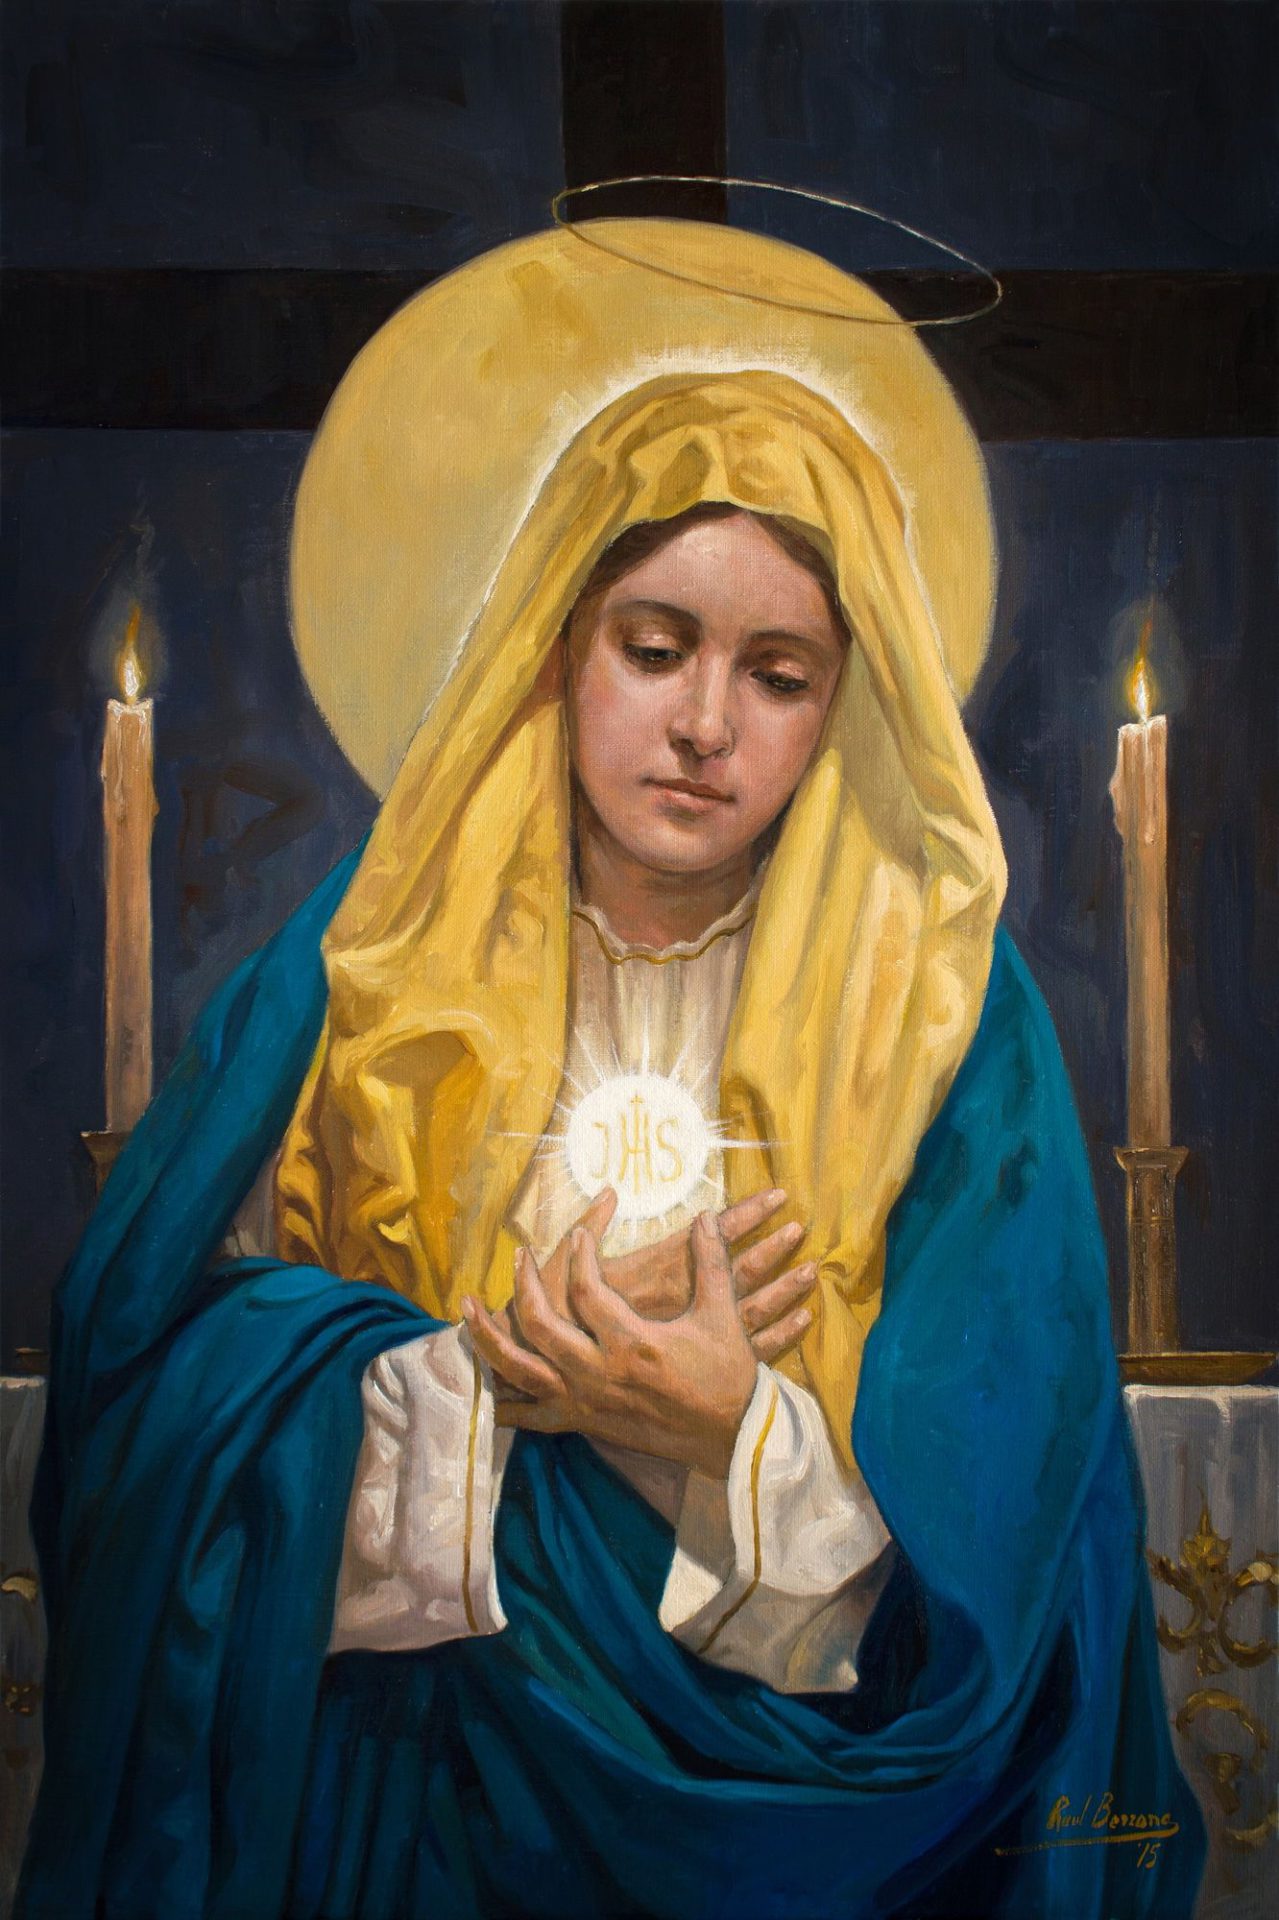 Maria mulher eucarística (em breve)